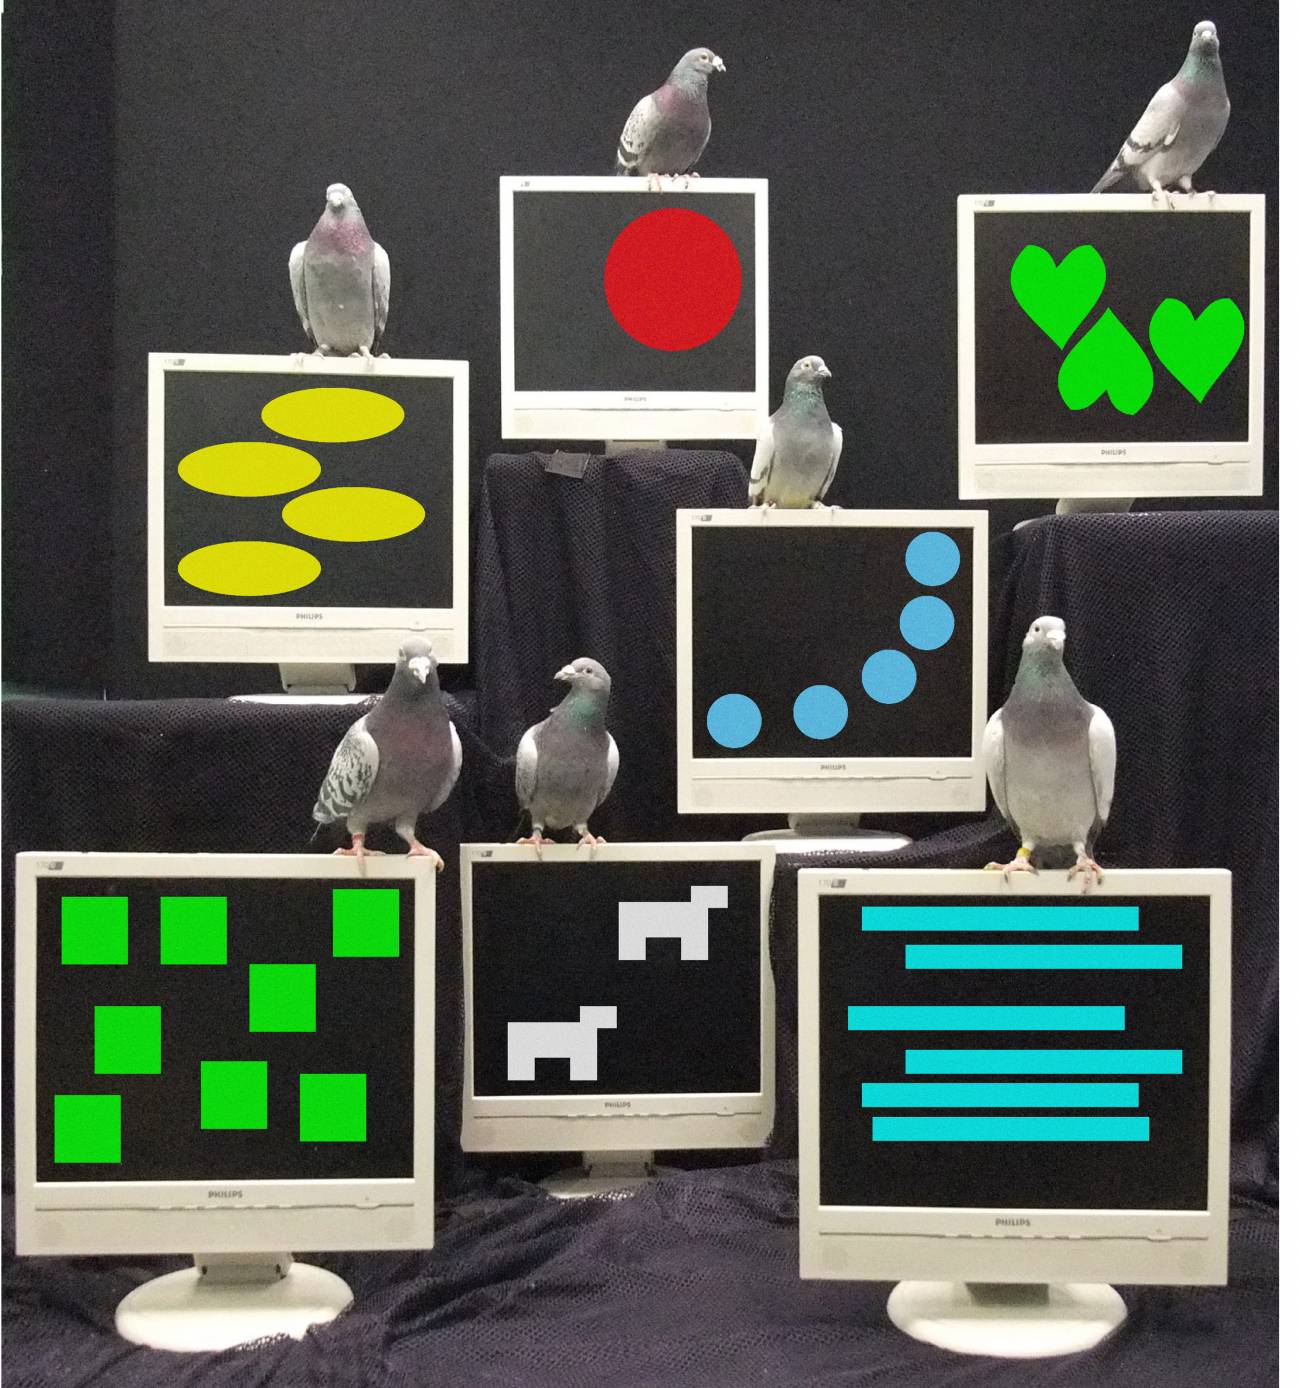 Montaje de varias palomas posadas sobre las imágenes utilzadas en el experimento